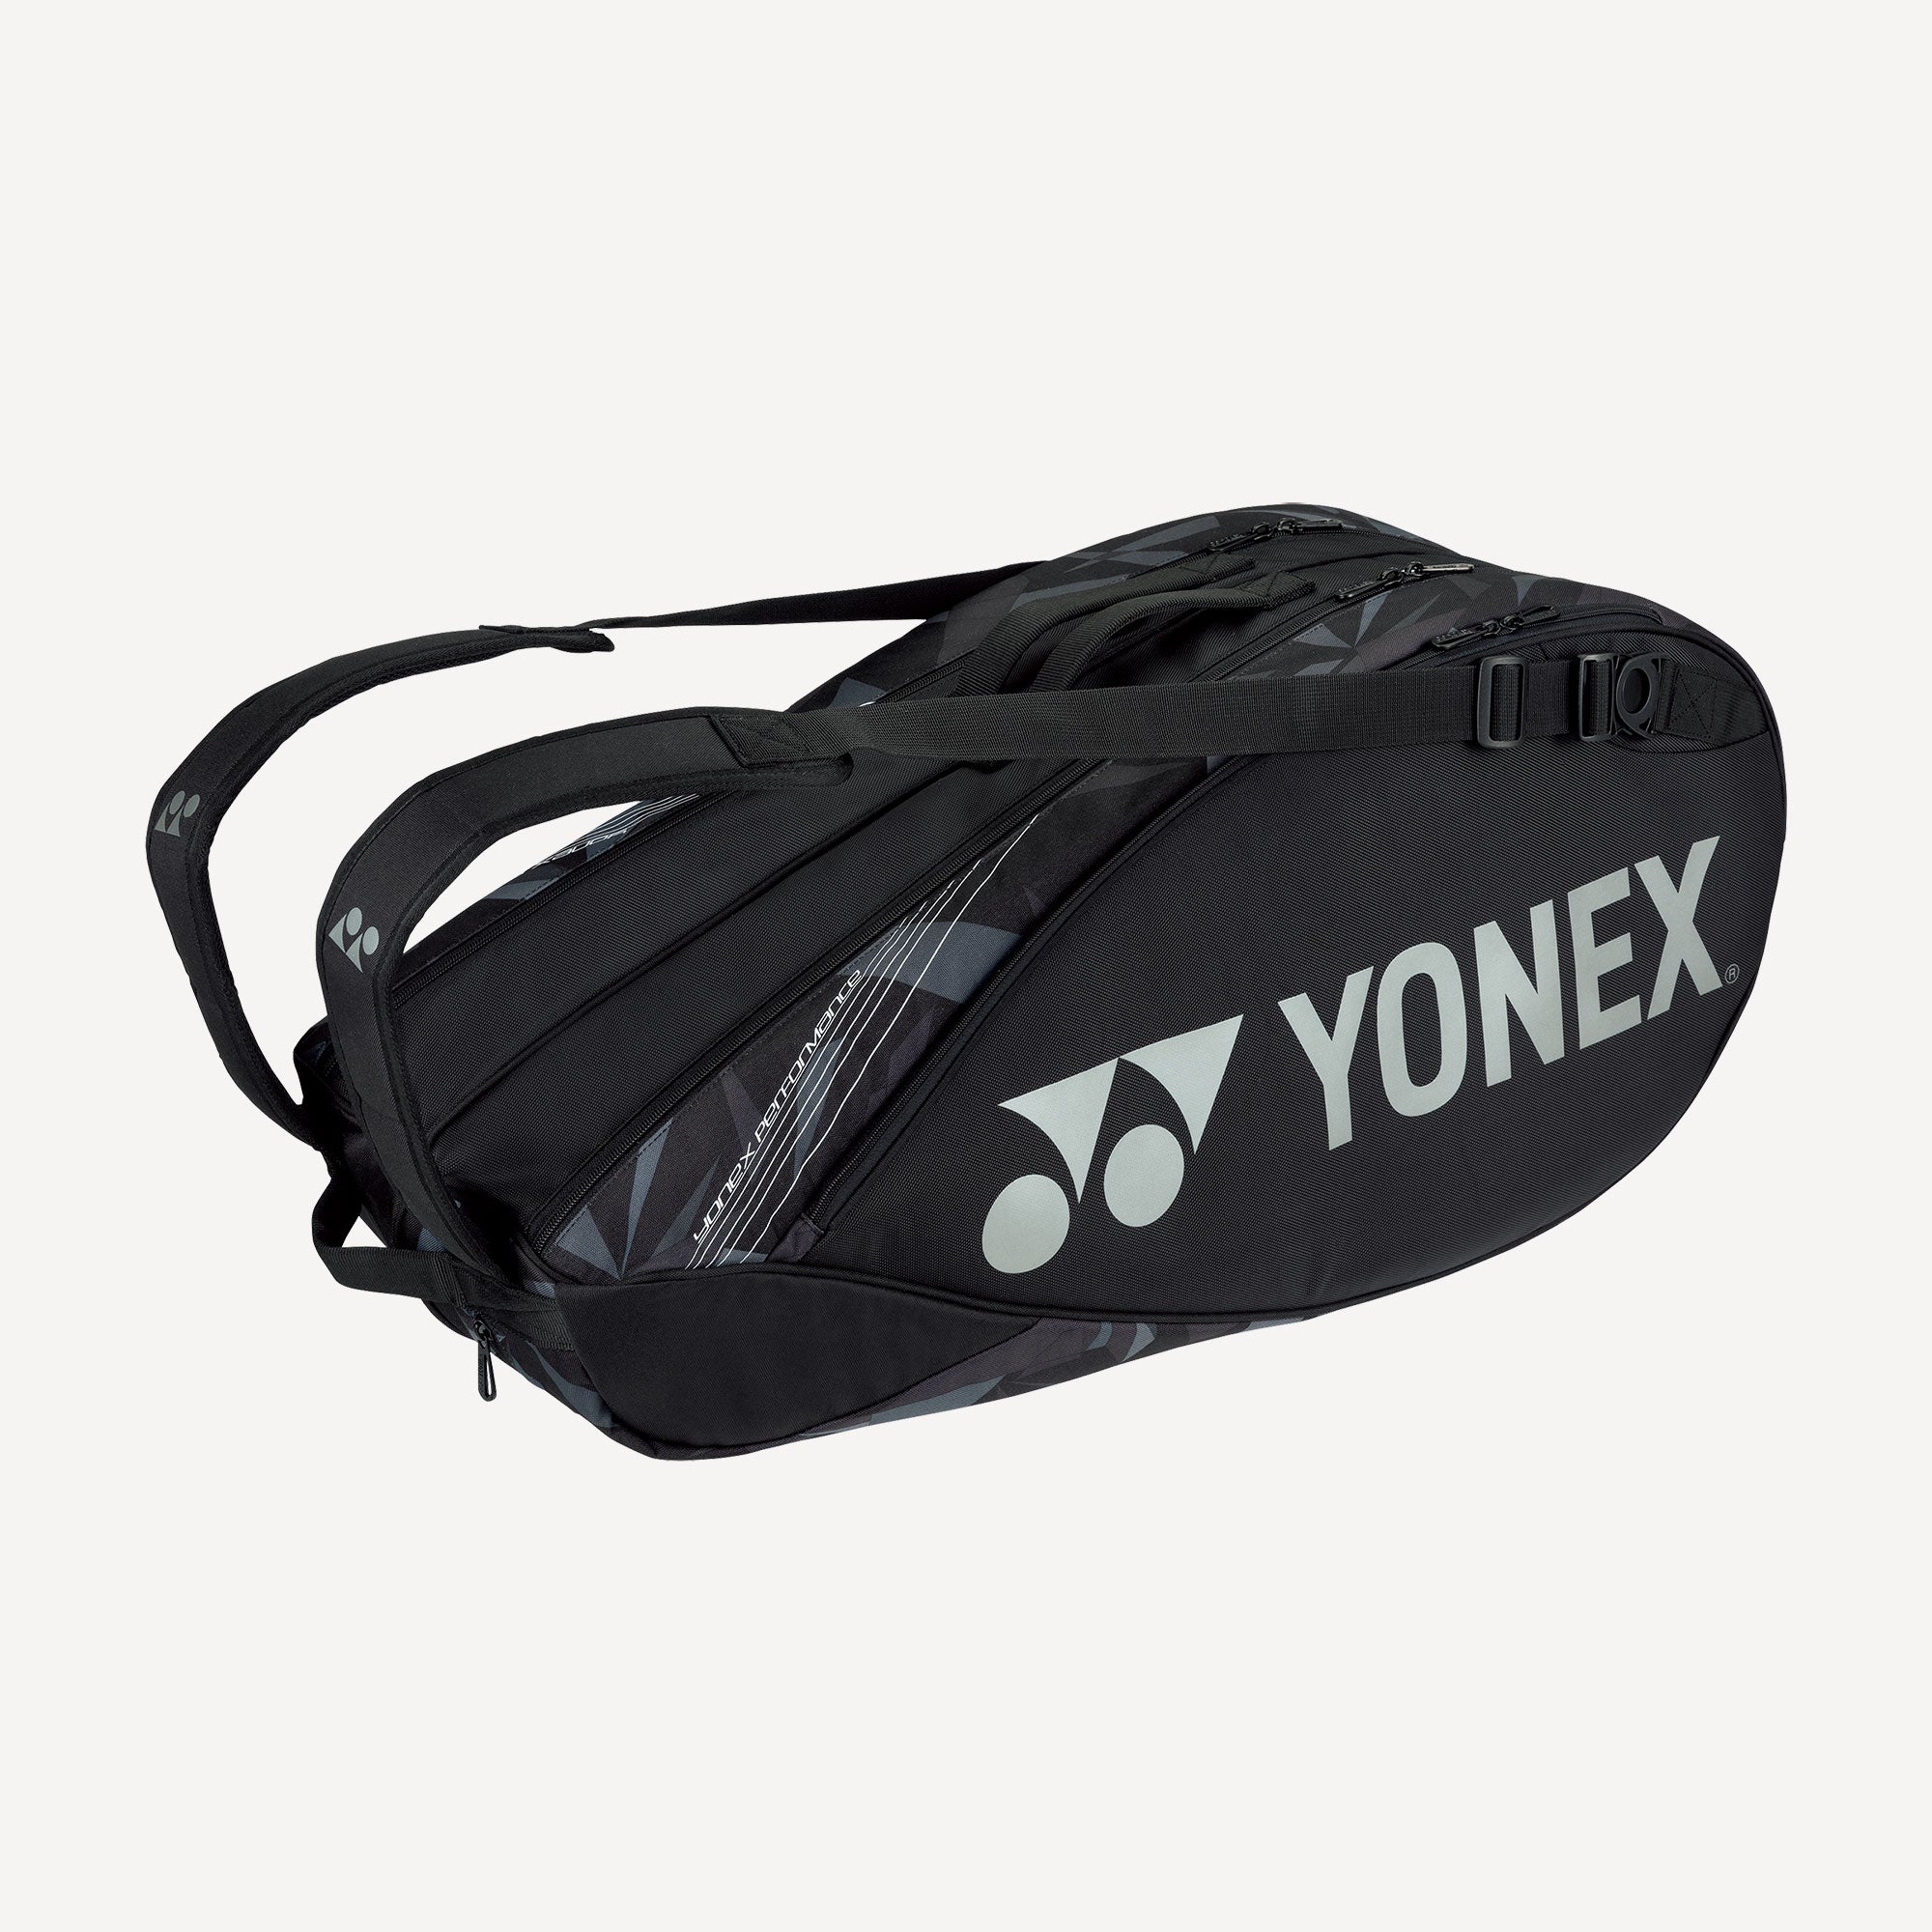 Yonex Pro 9R Tennis Bag Black (1)